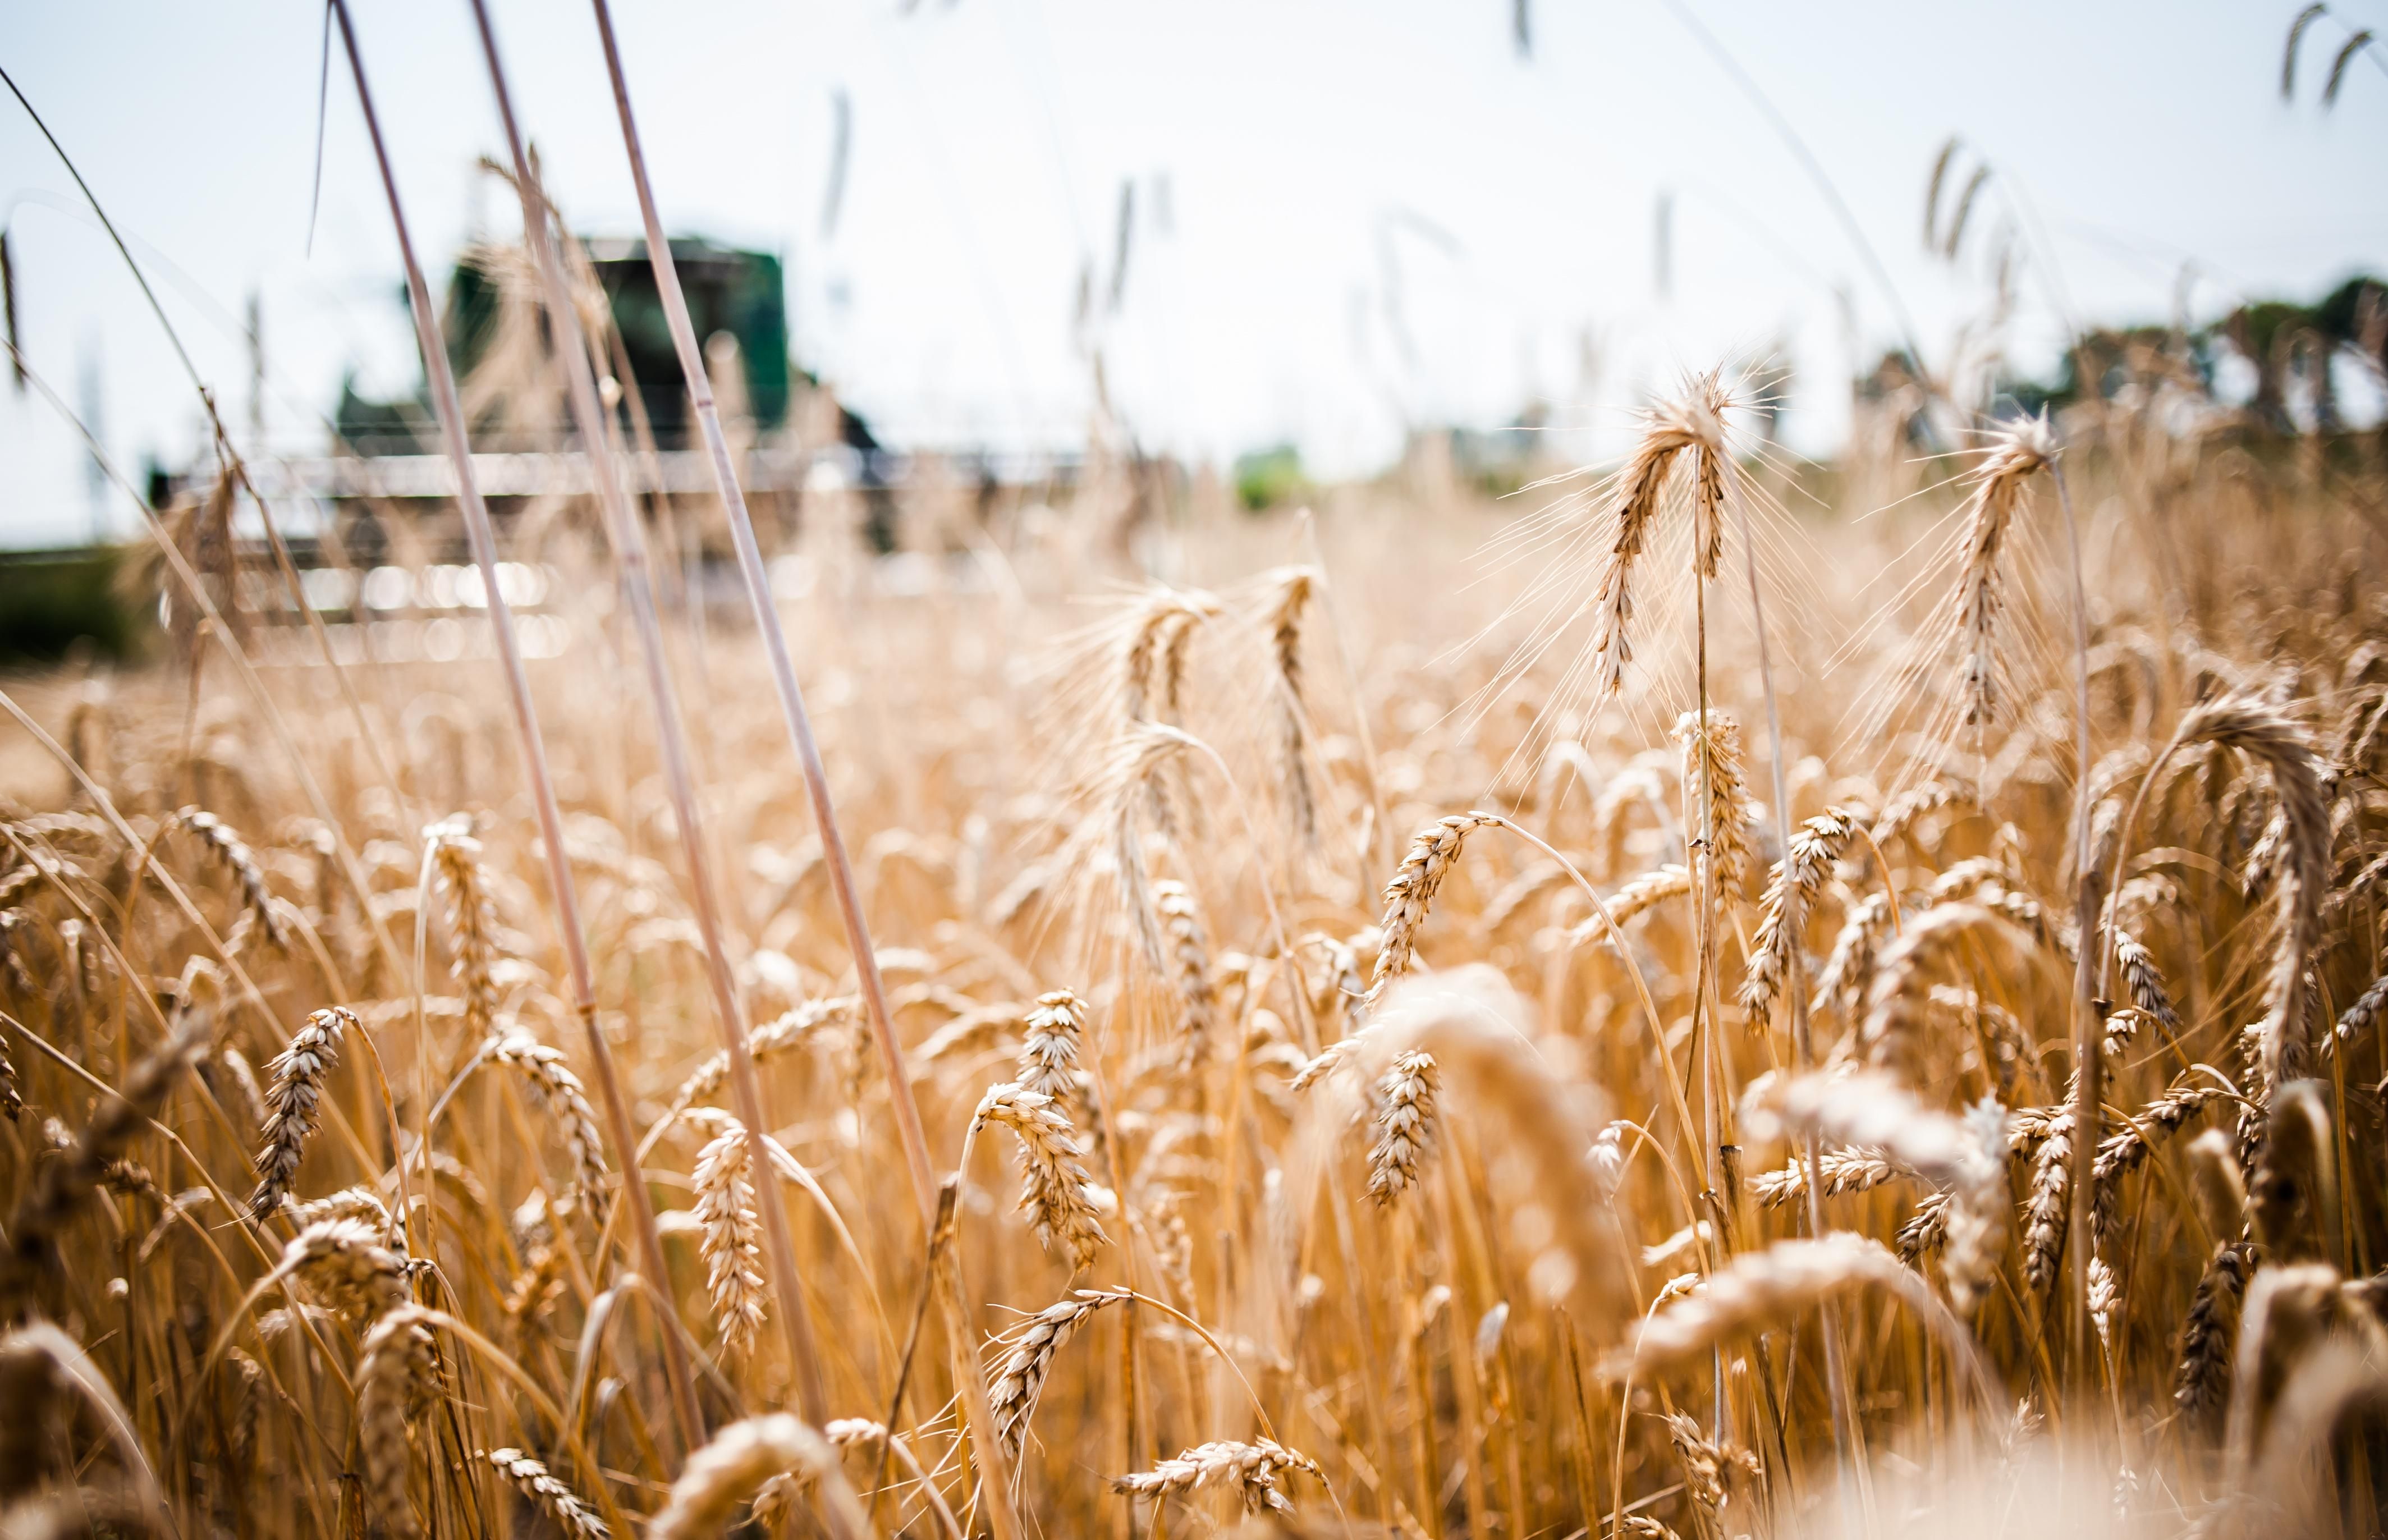 Украина в 2017 году экспортировала рекордное количество зерна: эксперты озвучили цифры